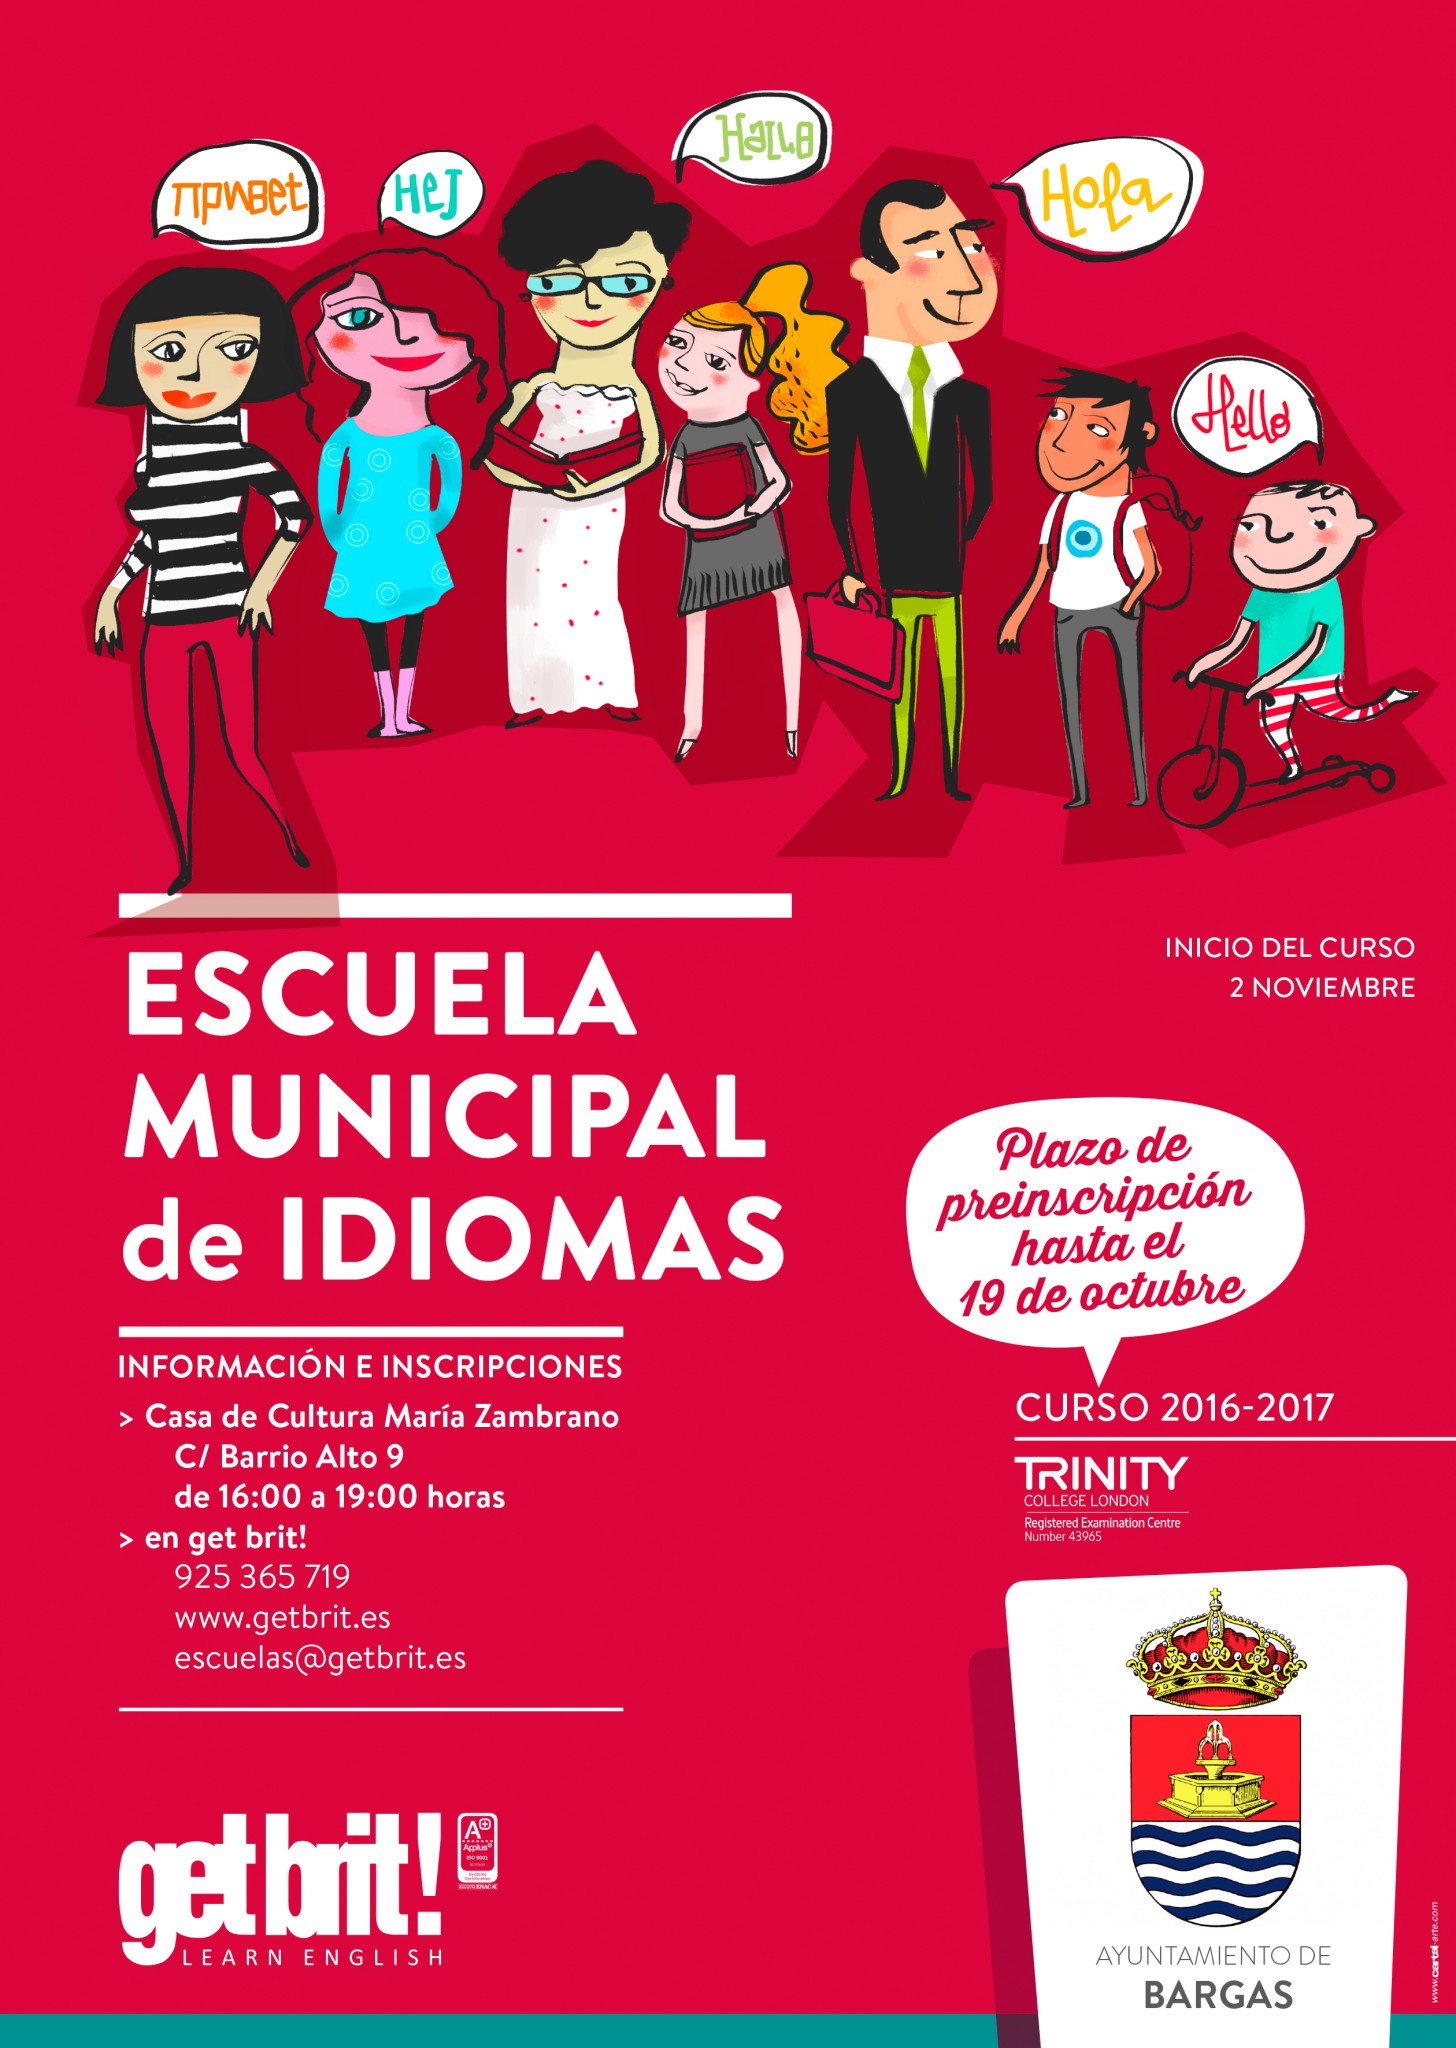 Escuela Municipal de Idiomas – Inicio del Curso 2016/2017